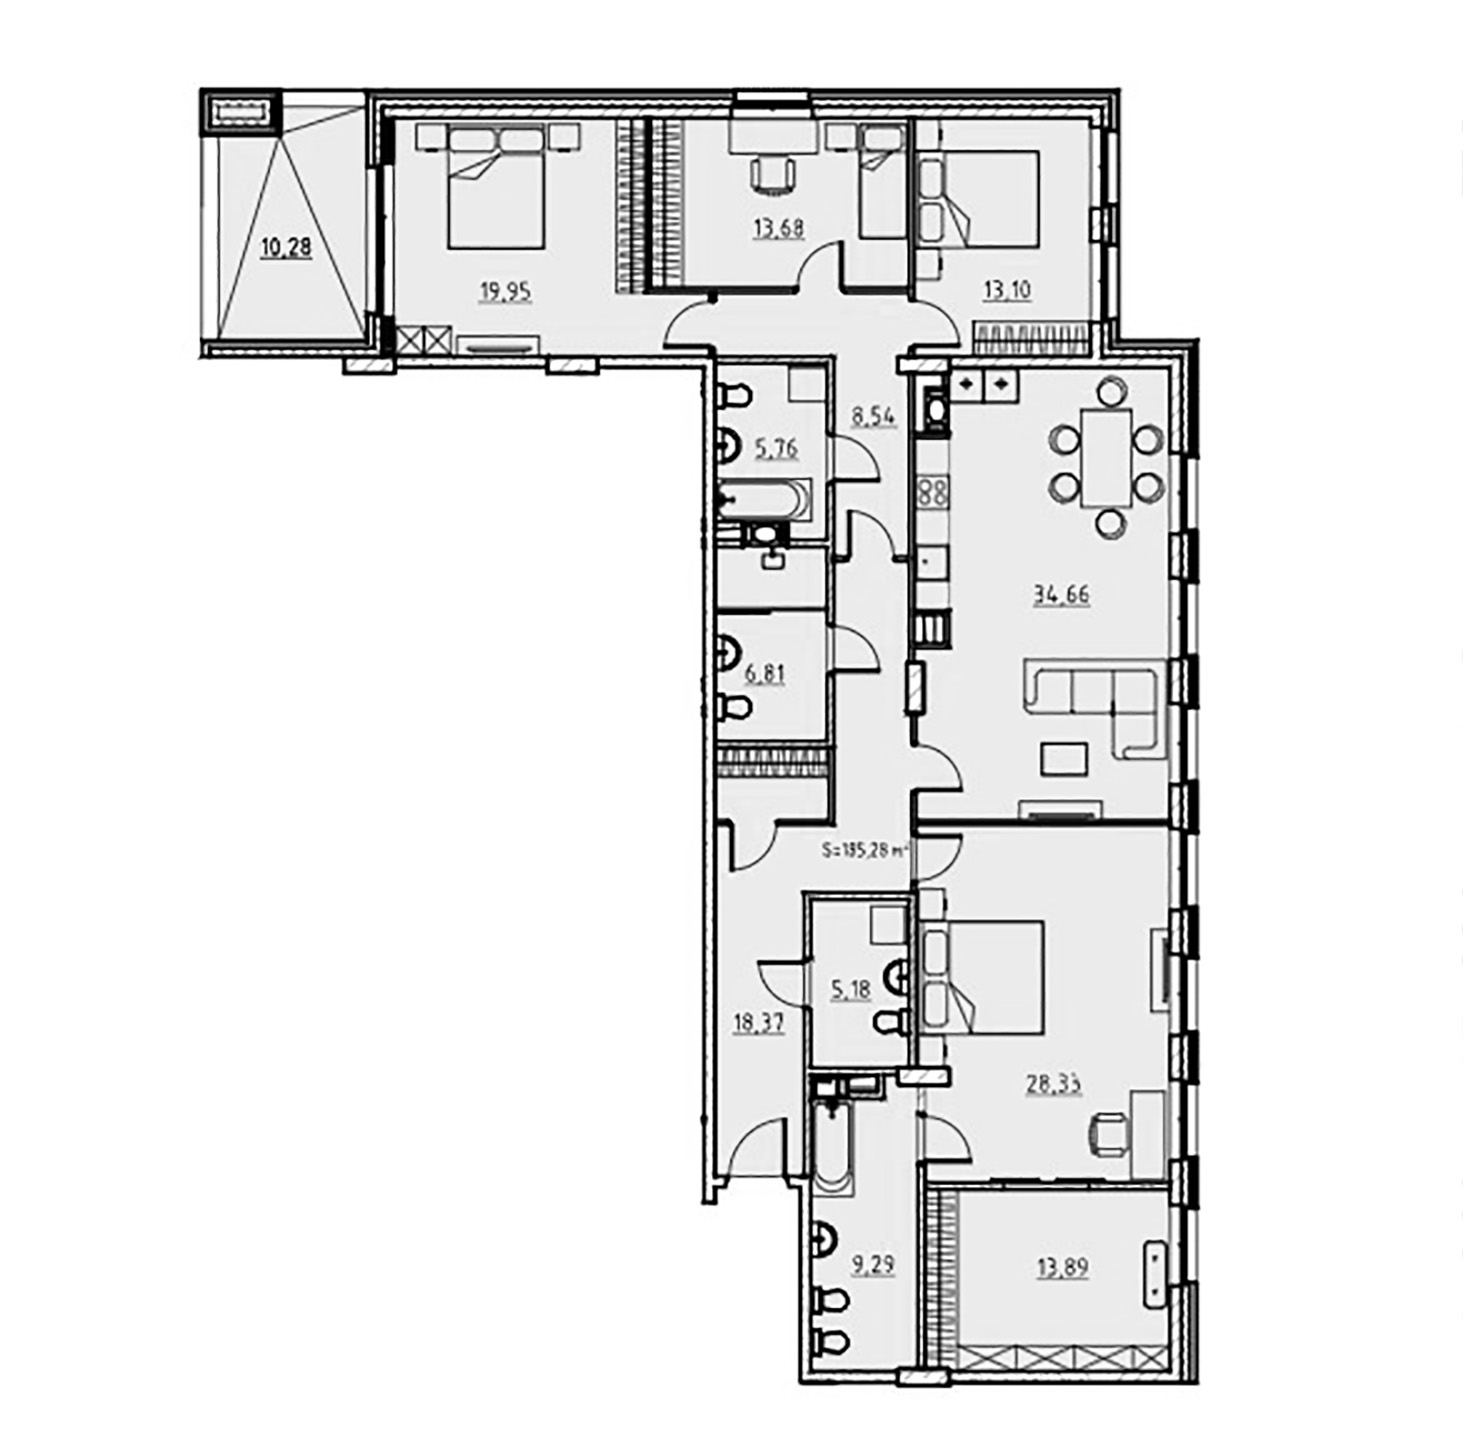 4-комнатная квартира  №46 в Манхэттен: 185.28 м², этаж 2 - купить в Санкт-Петербурге